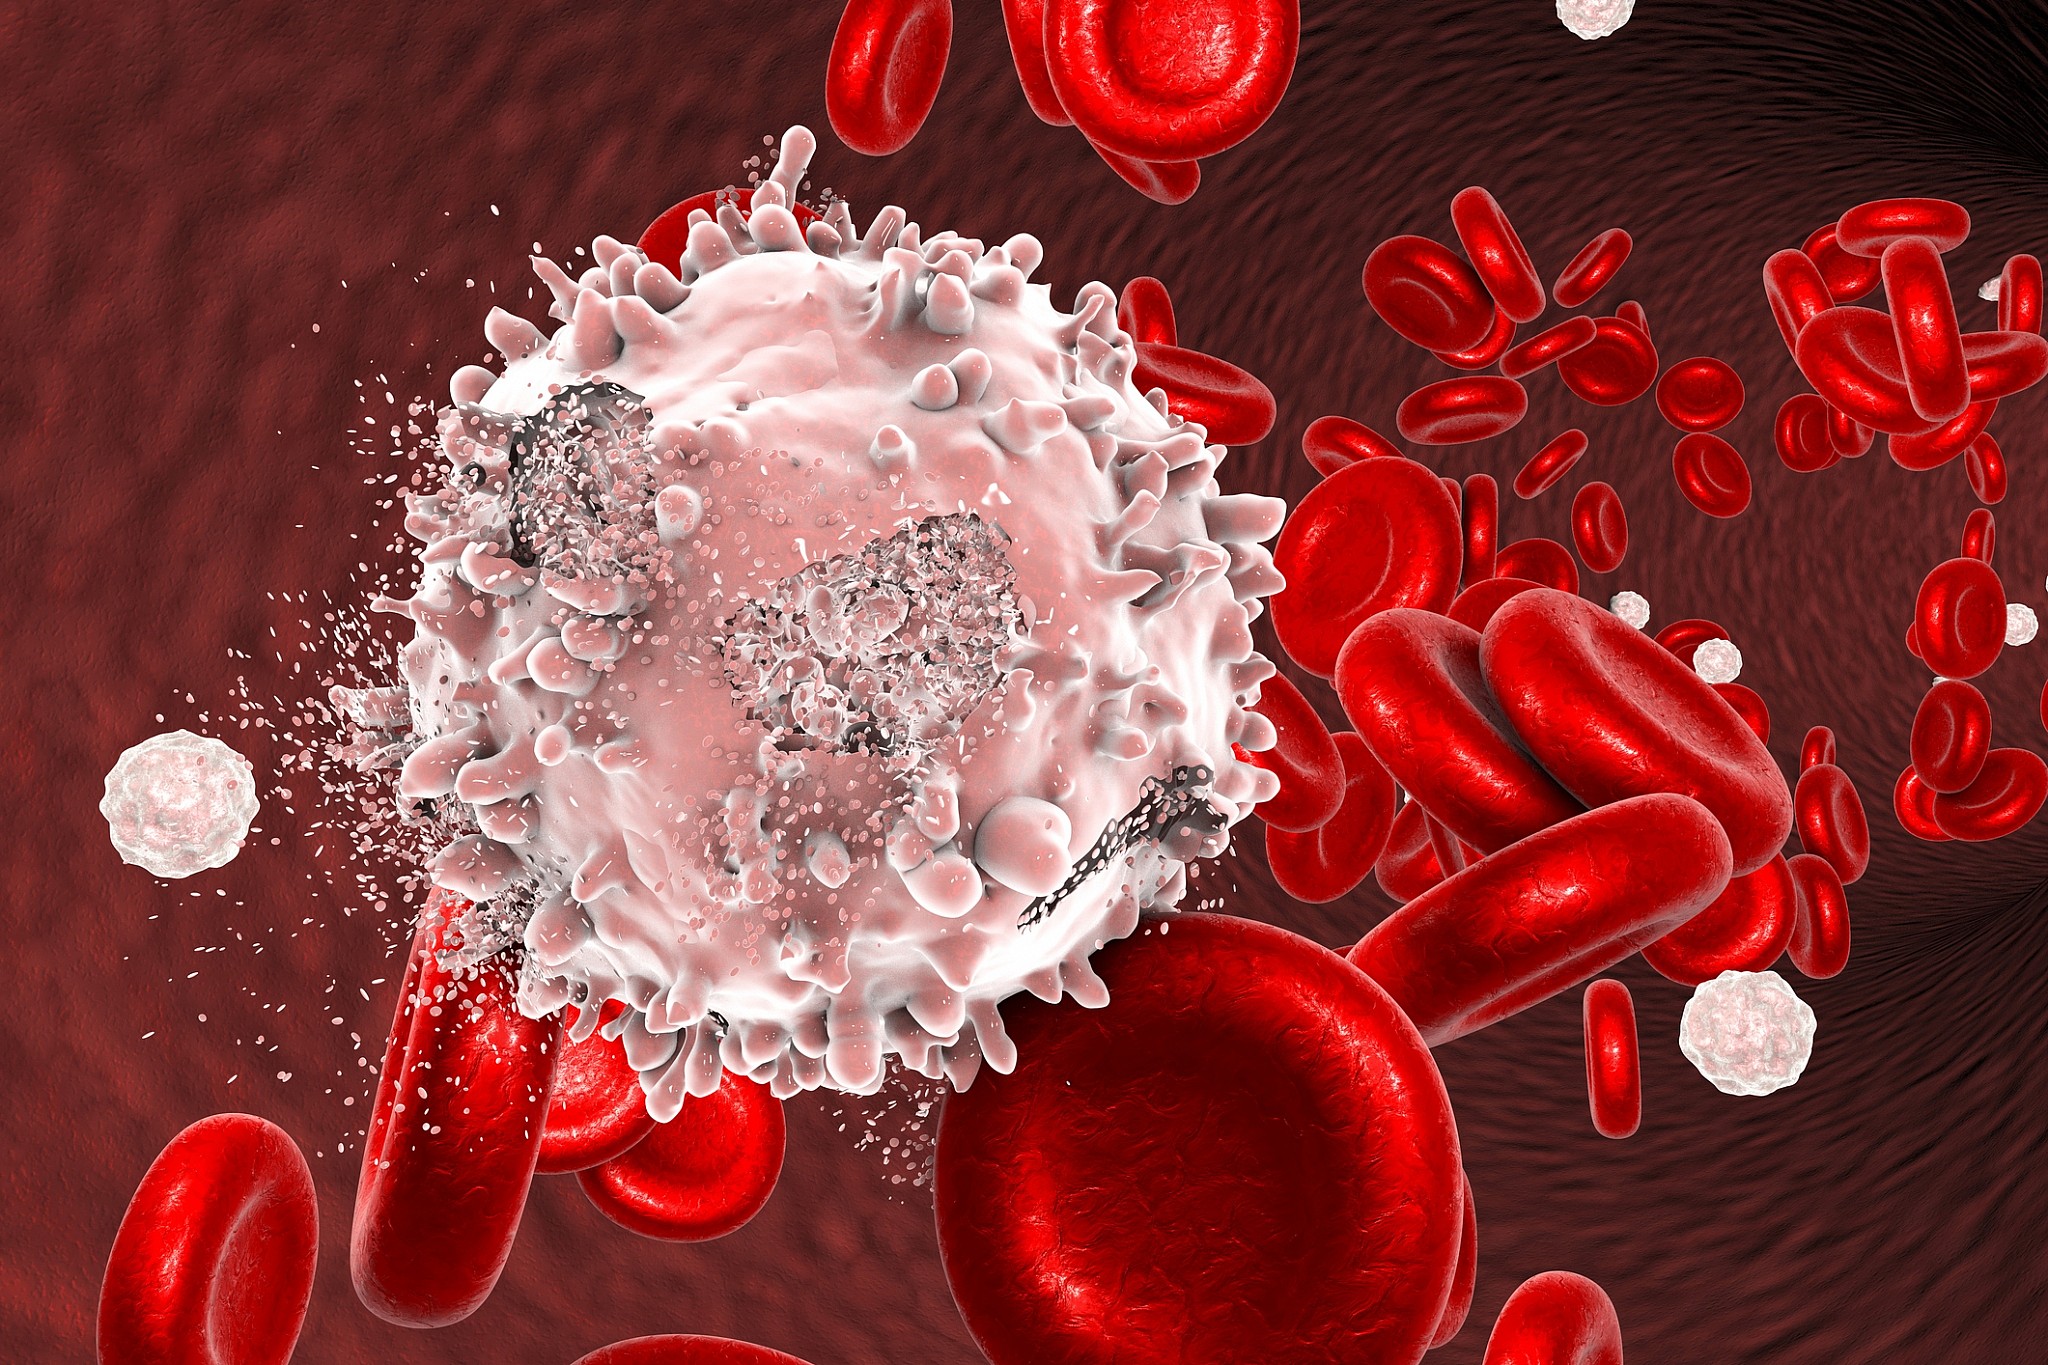 Ung thư máu là gì và nó ảnh hưởng đến cơ thể như thế nào?
